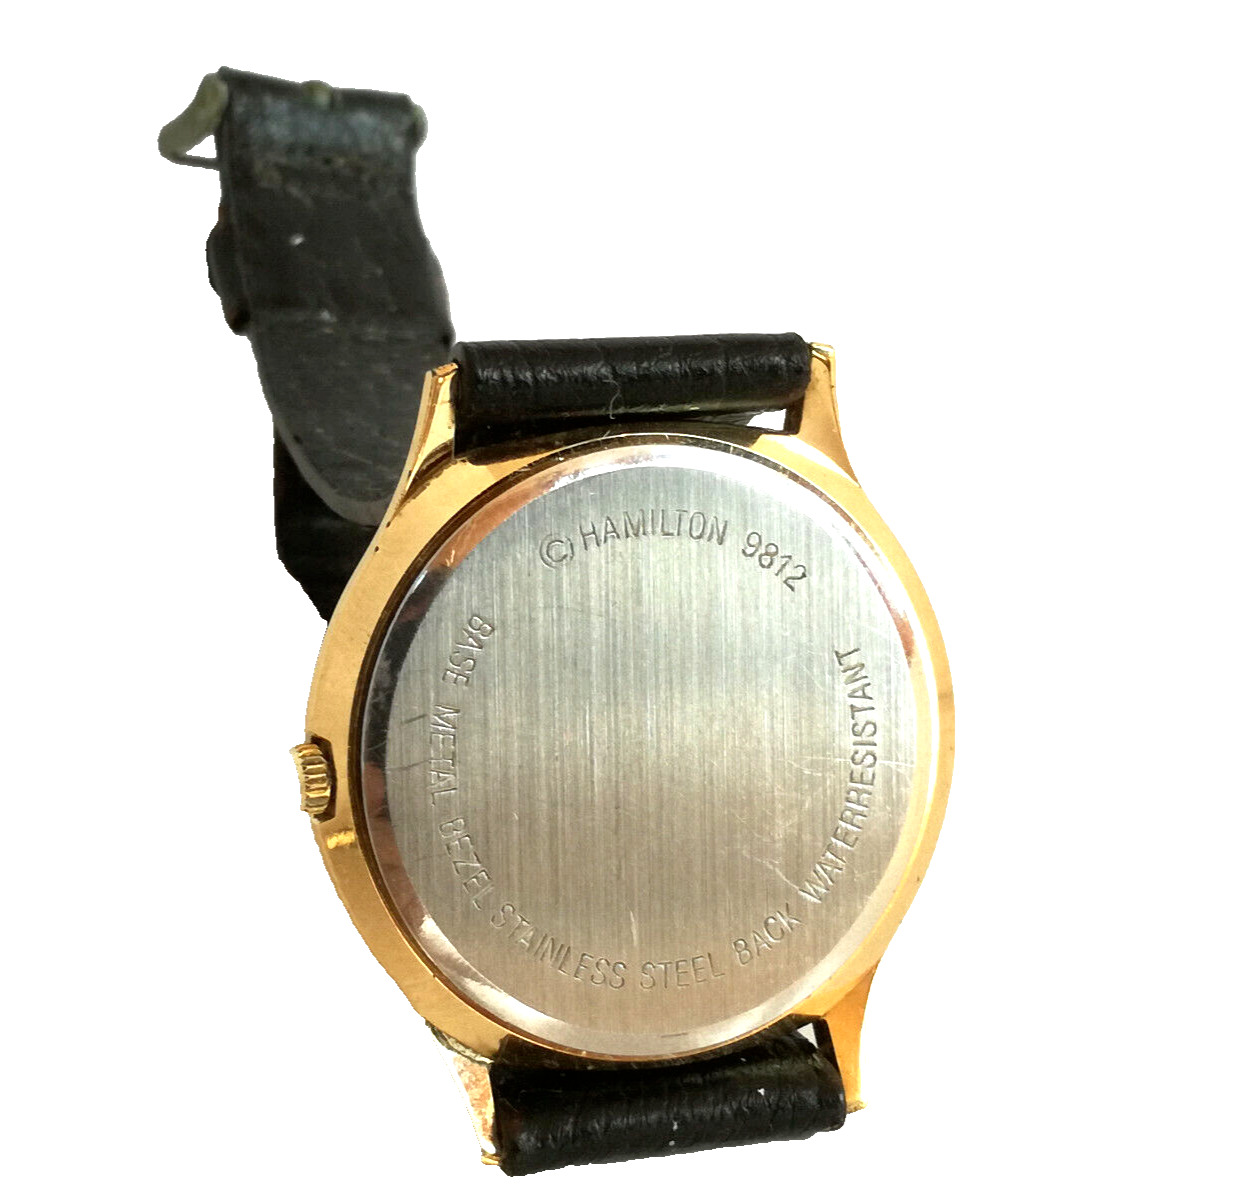 HAMILTON 9812 - PATTERSON M.S.A.CHAMPS Sammelwürdige Armbanduhr Datum / Date